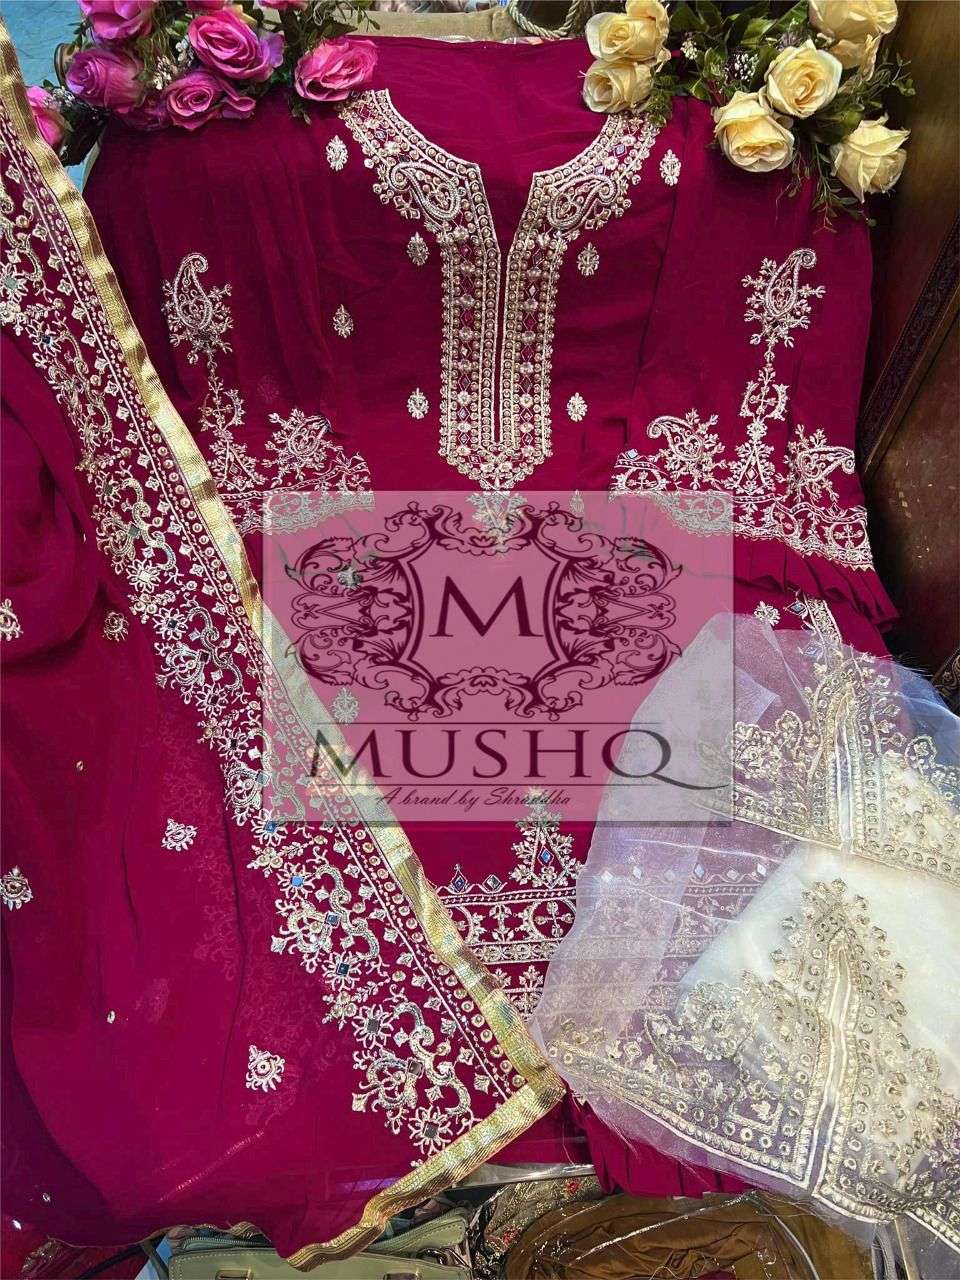 Mushq By Shraddha Designer Wholesale Online Salwar Suit Set